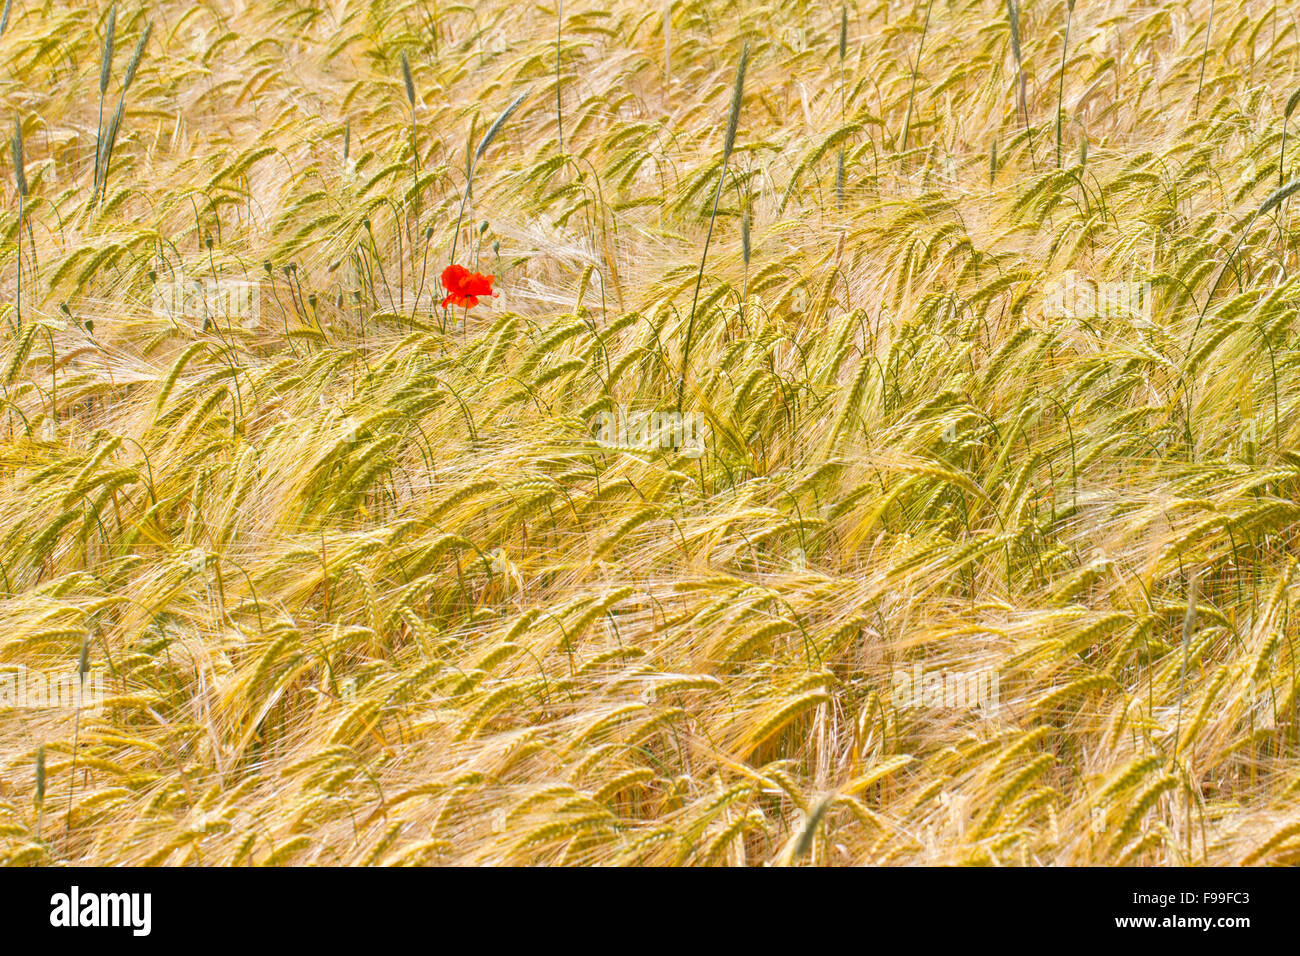 Coquelicot (Papaver rhoeas), fleurs simples dans une culture de blé dur (Triticum durum). Causse de Gramat, Lot, France. Mai. Banque D'Images